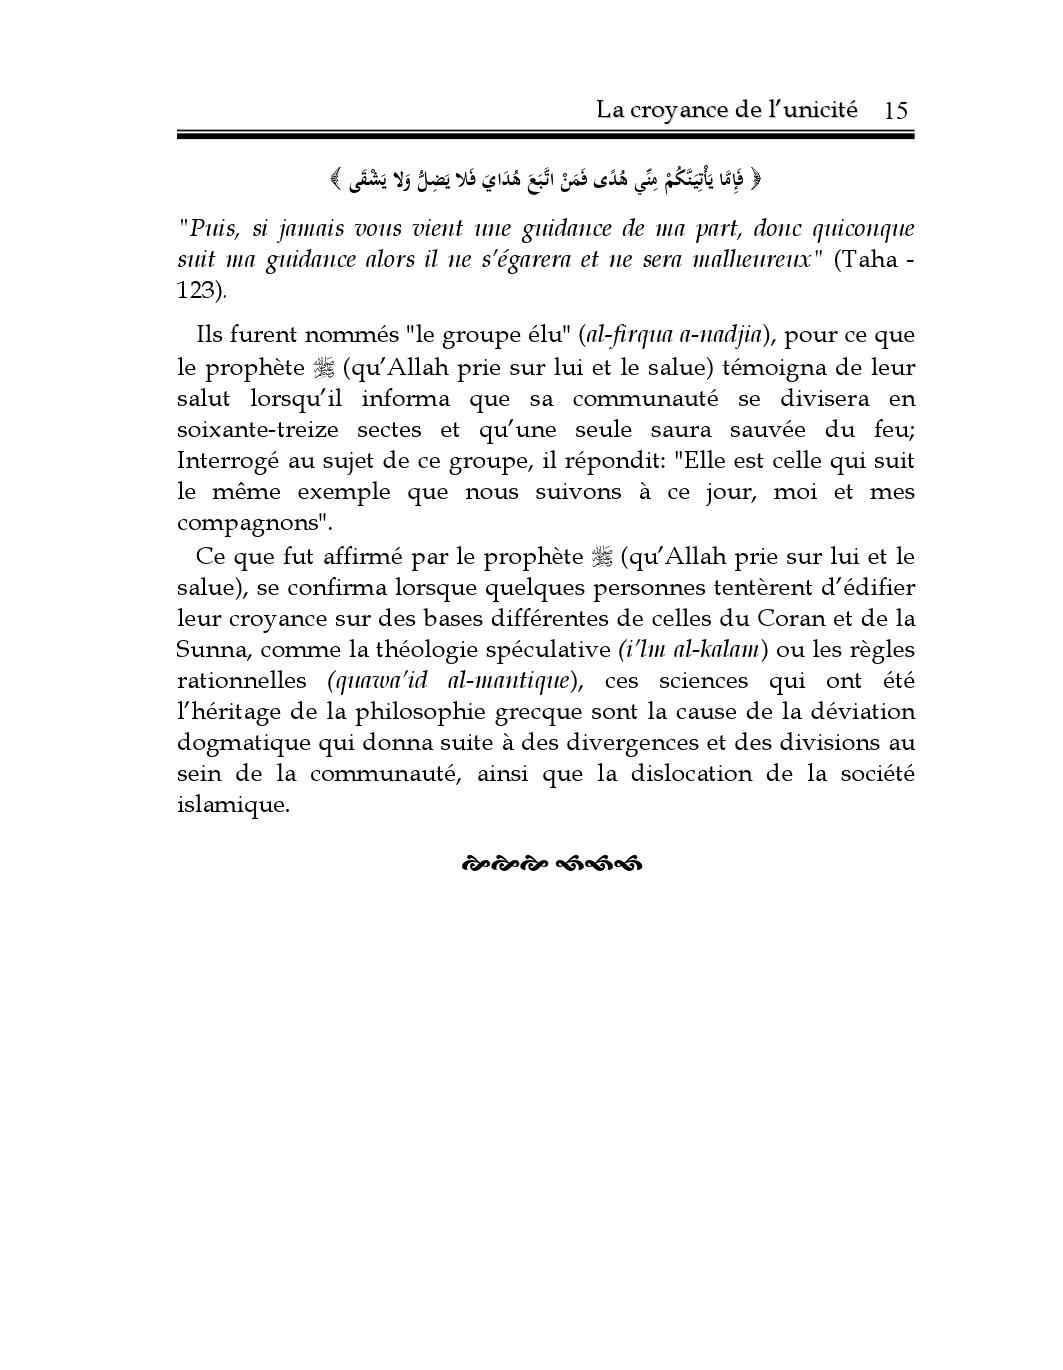 Croyance_de_lunicite_Fawzan.pdf, 240-Sayfa 